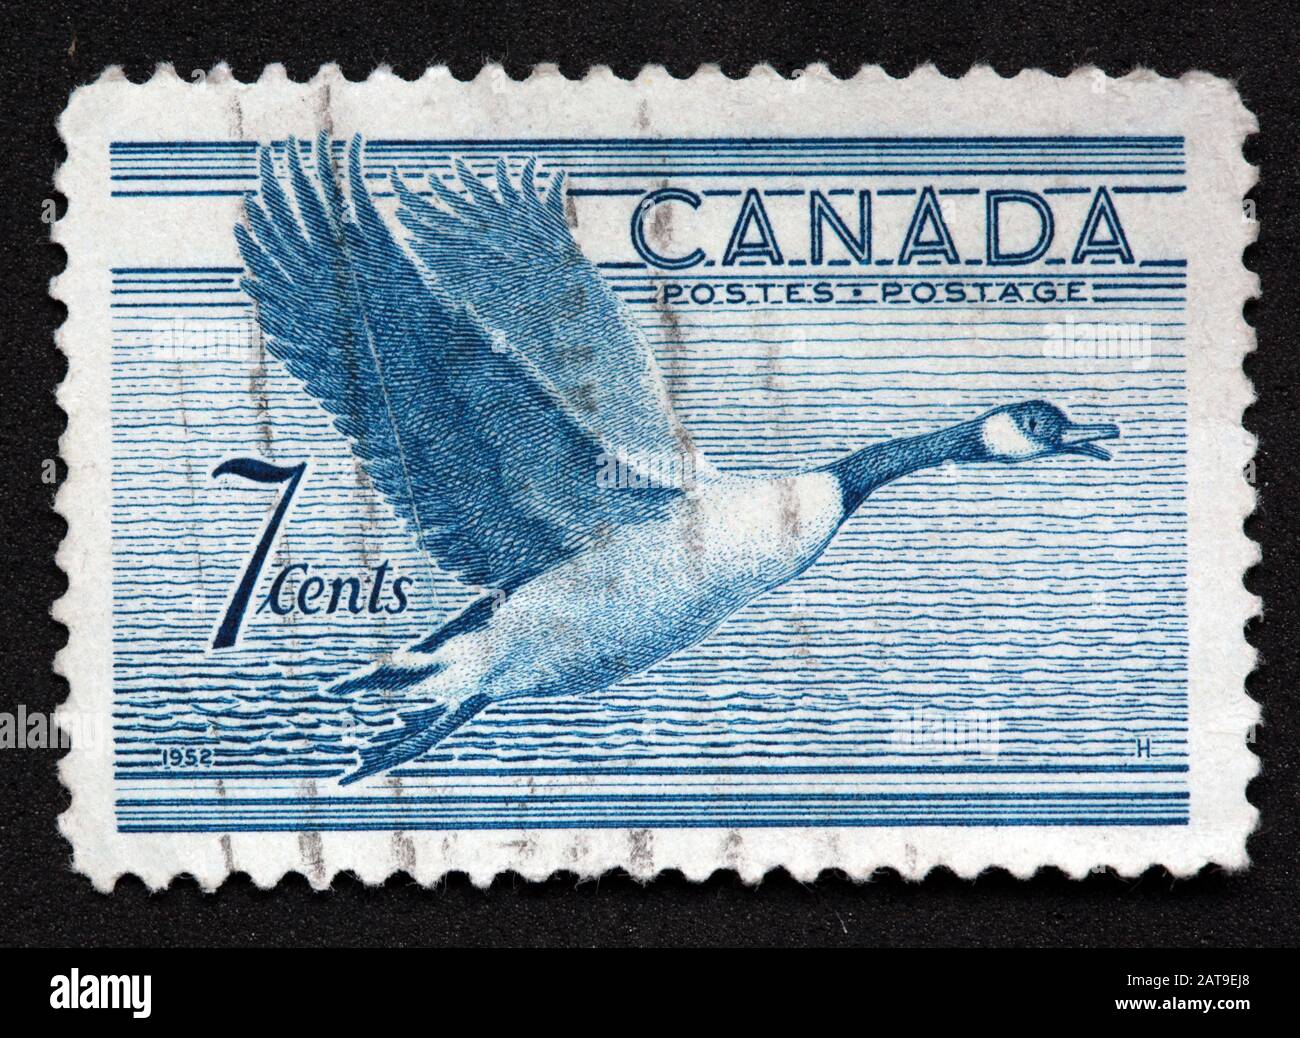 Timbre canadien, Timbre Canada, postes Canada, timbre utilisé, timbre bleu, Canada 7c., 1952, oie du Canada, postes, affranchissement Banque D'Images